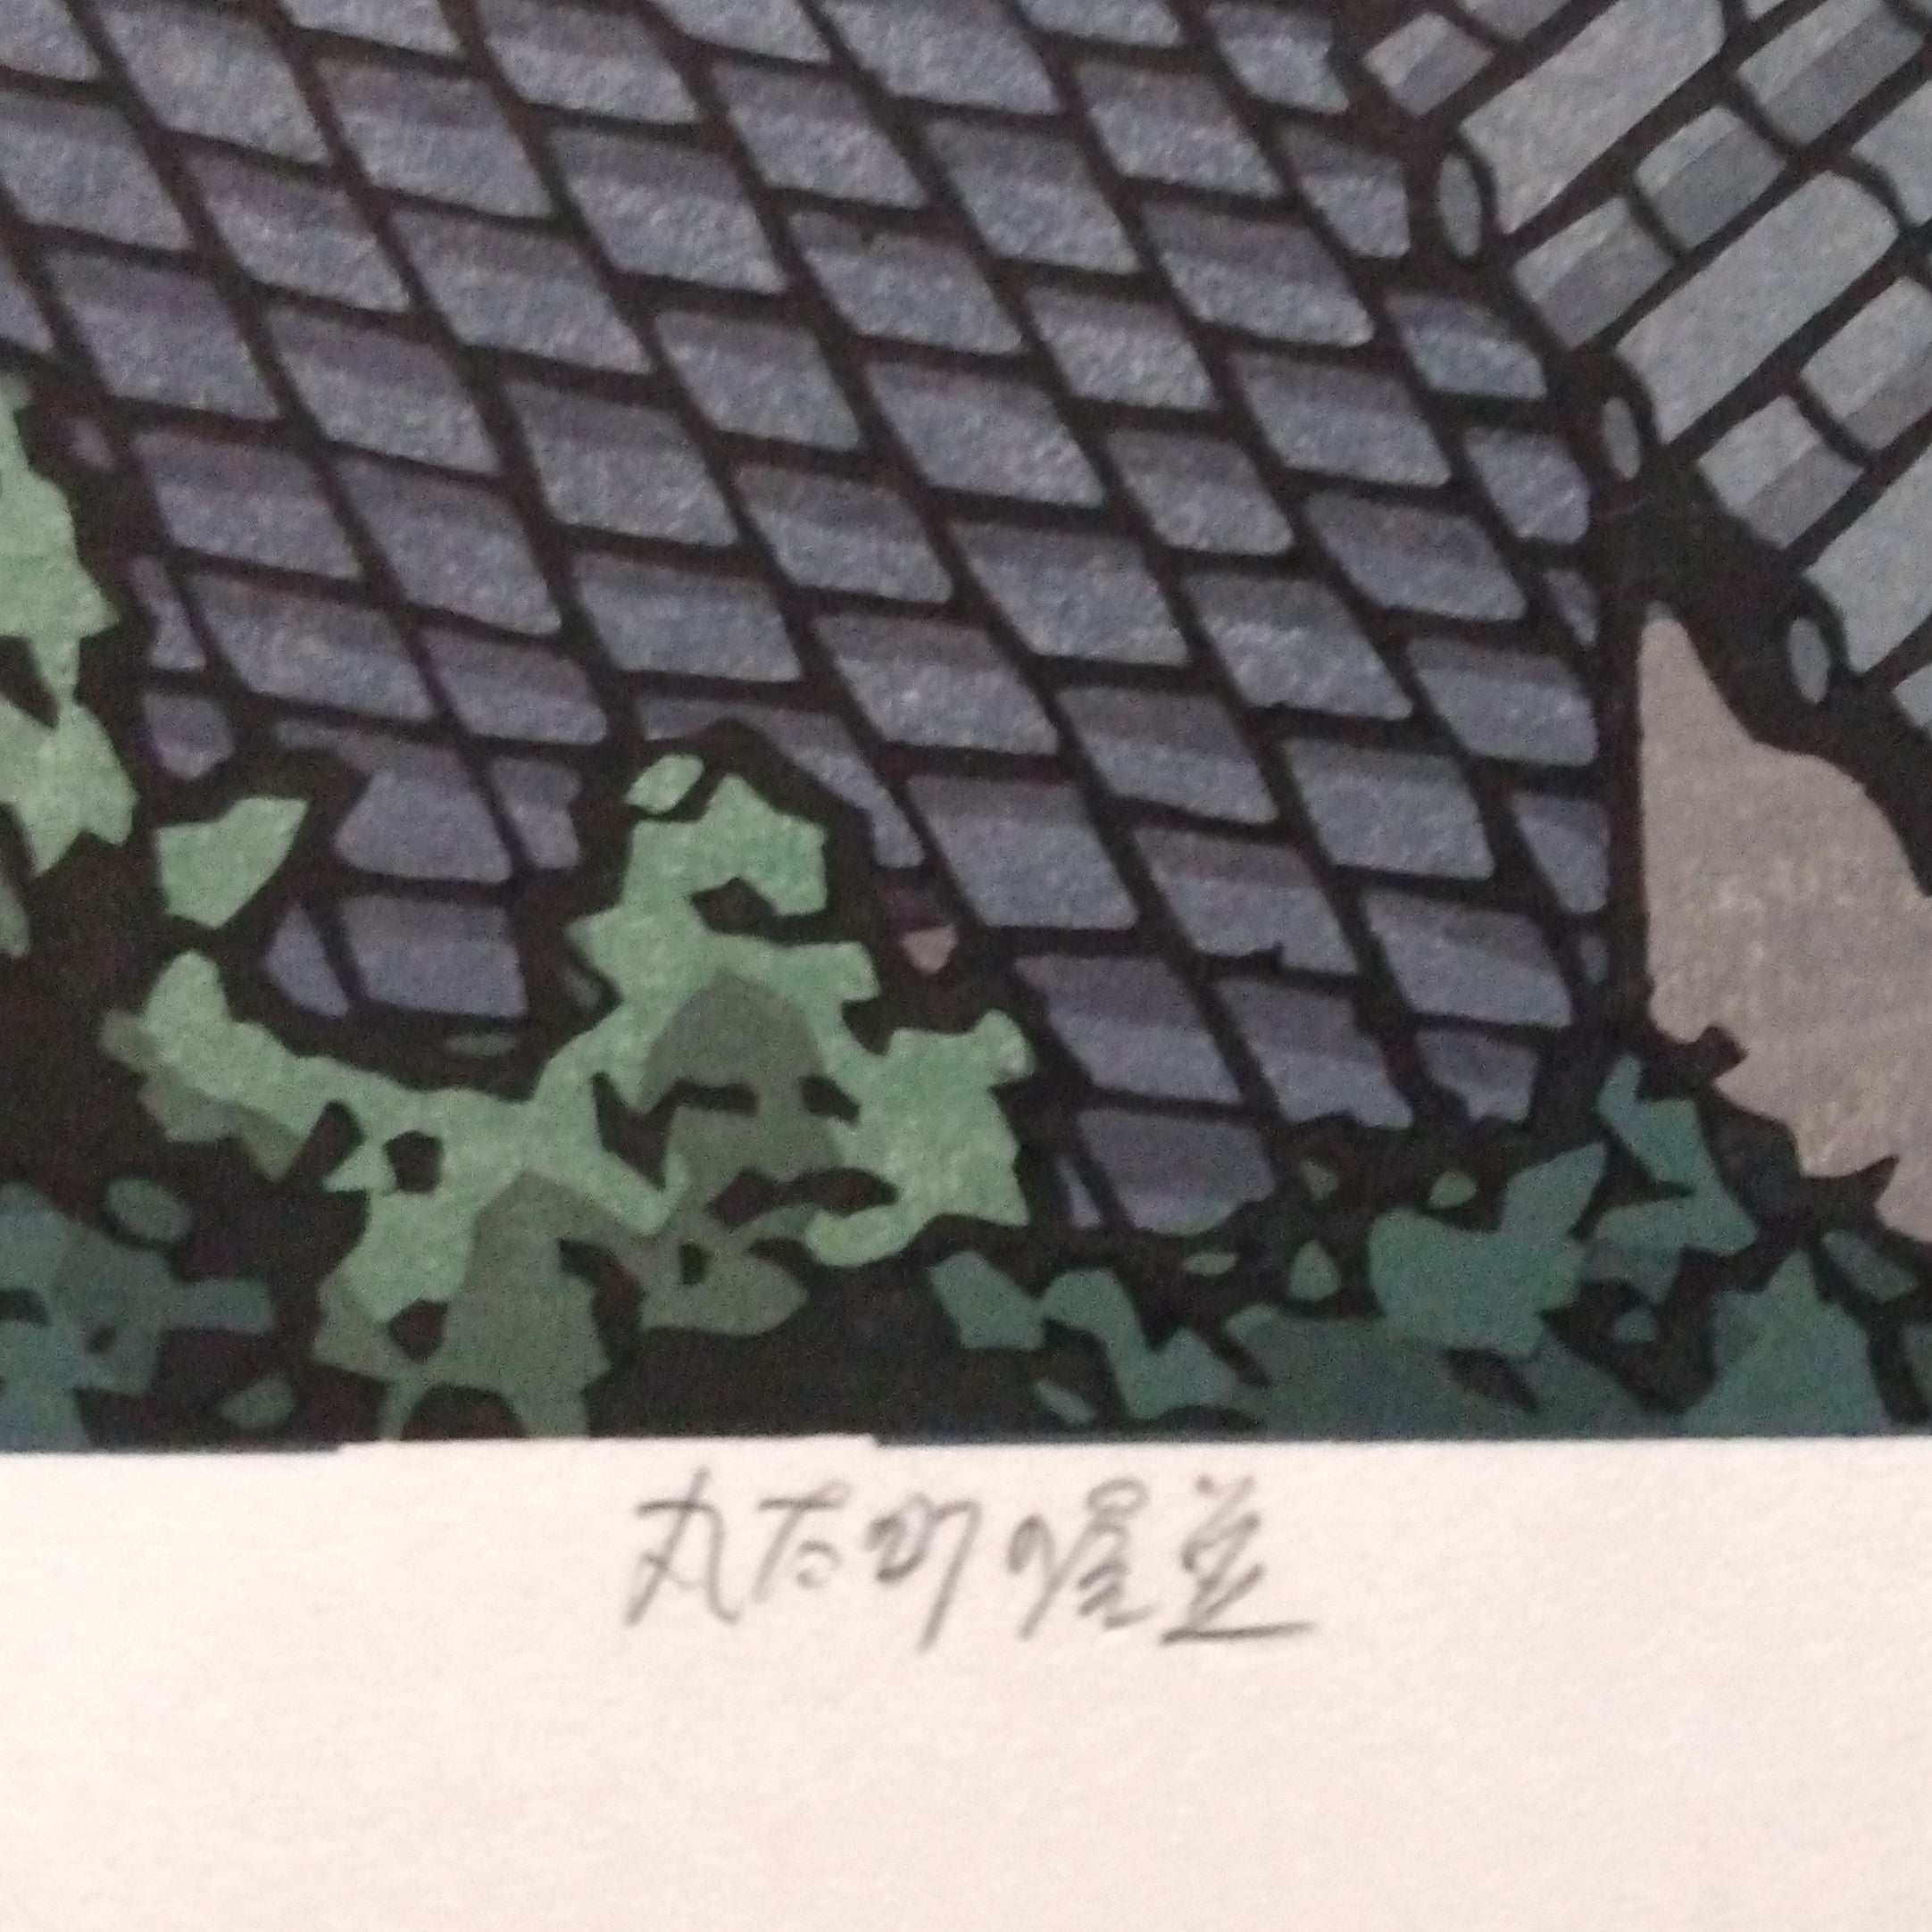 Woodblock Print by Katsuyuki Nishijima, "Waves of Roof Tiles in Marutamachi" (Marutamachi no YaNami)